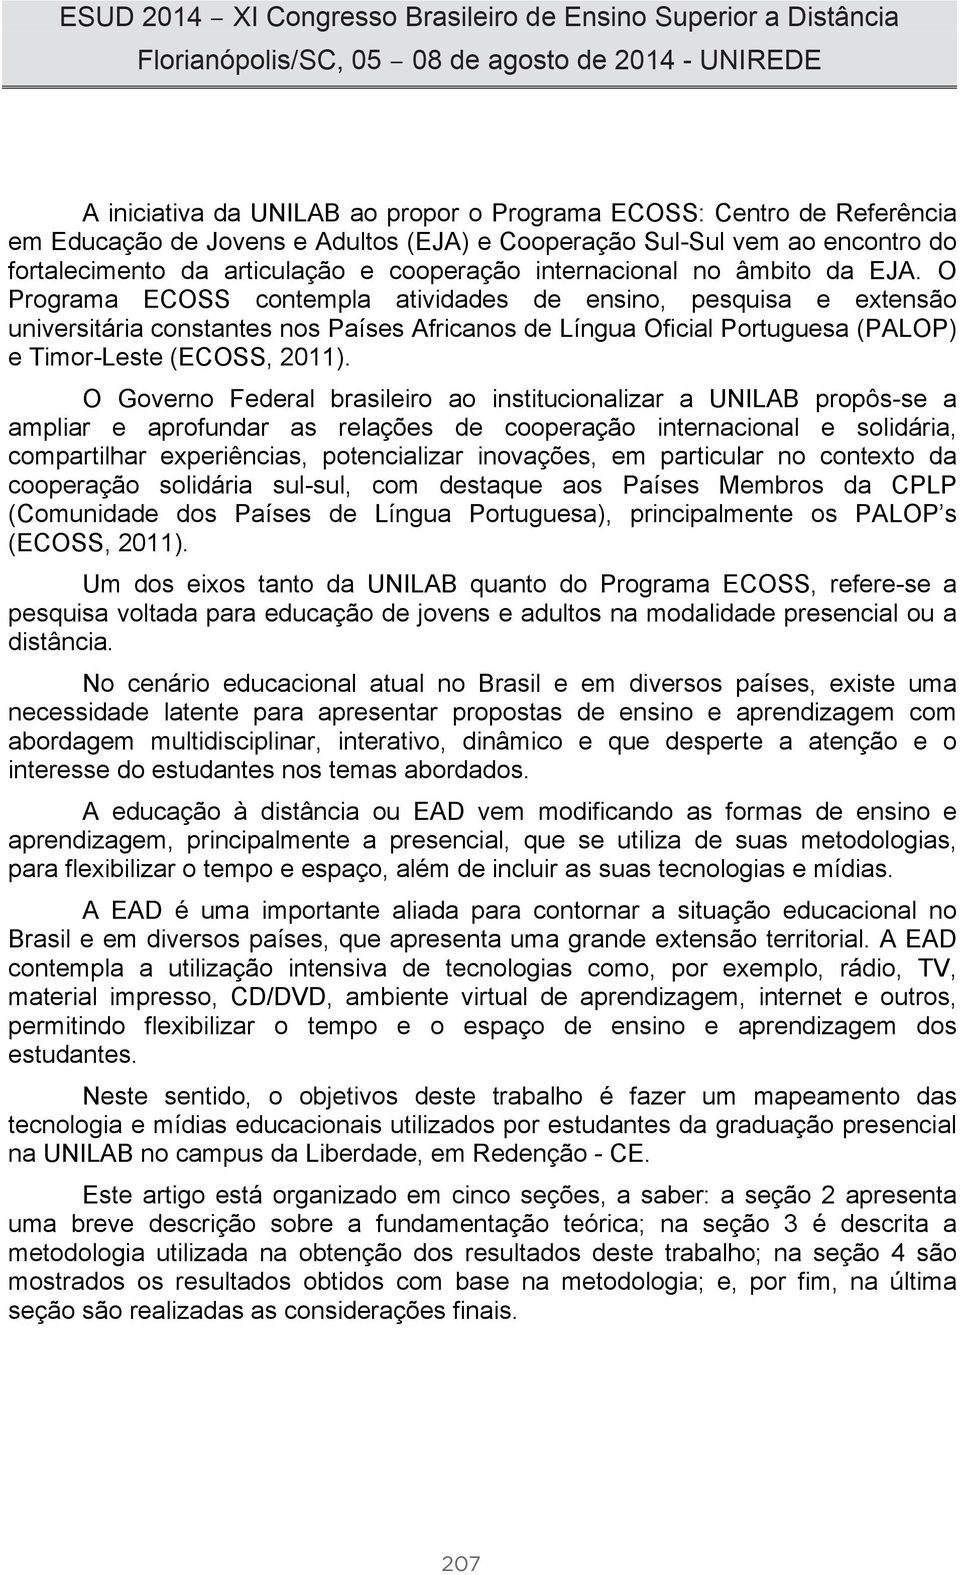 O Programa ECOSS contempla atividades de ensino, pesquisa e extensão universitária constantes nos Países Africanos de Língua Oficial Portuguesa (PALOP) e Timor-Leste (ECOSS, 2011).